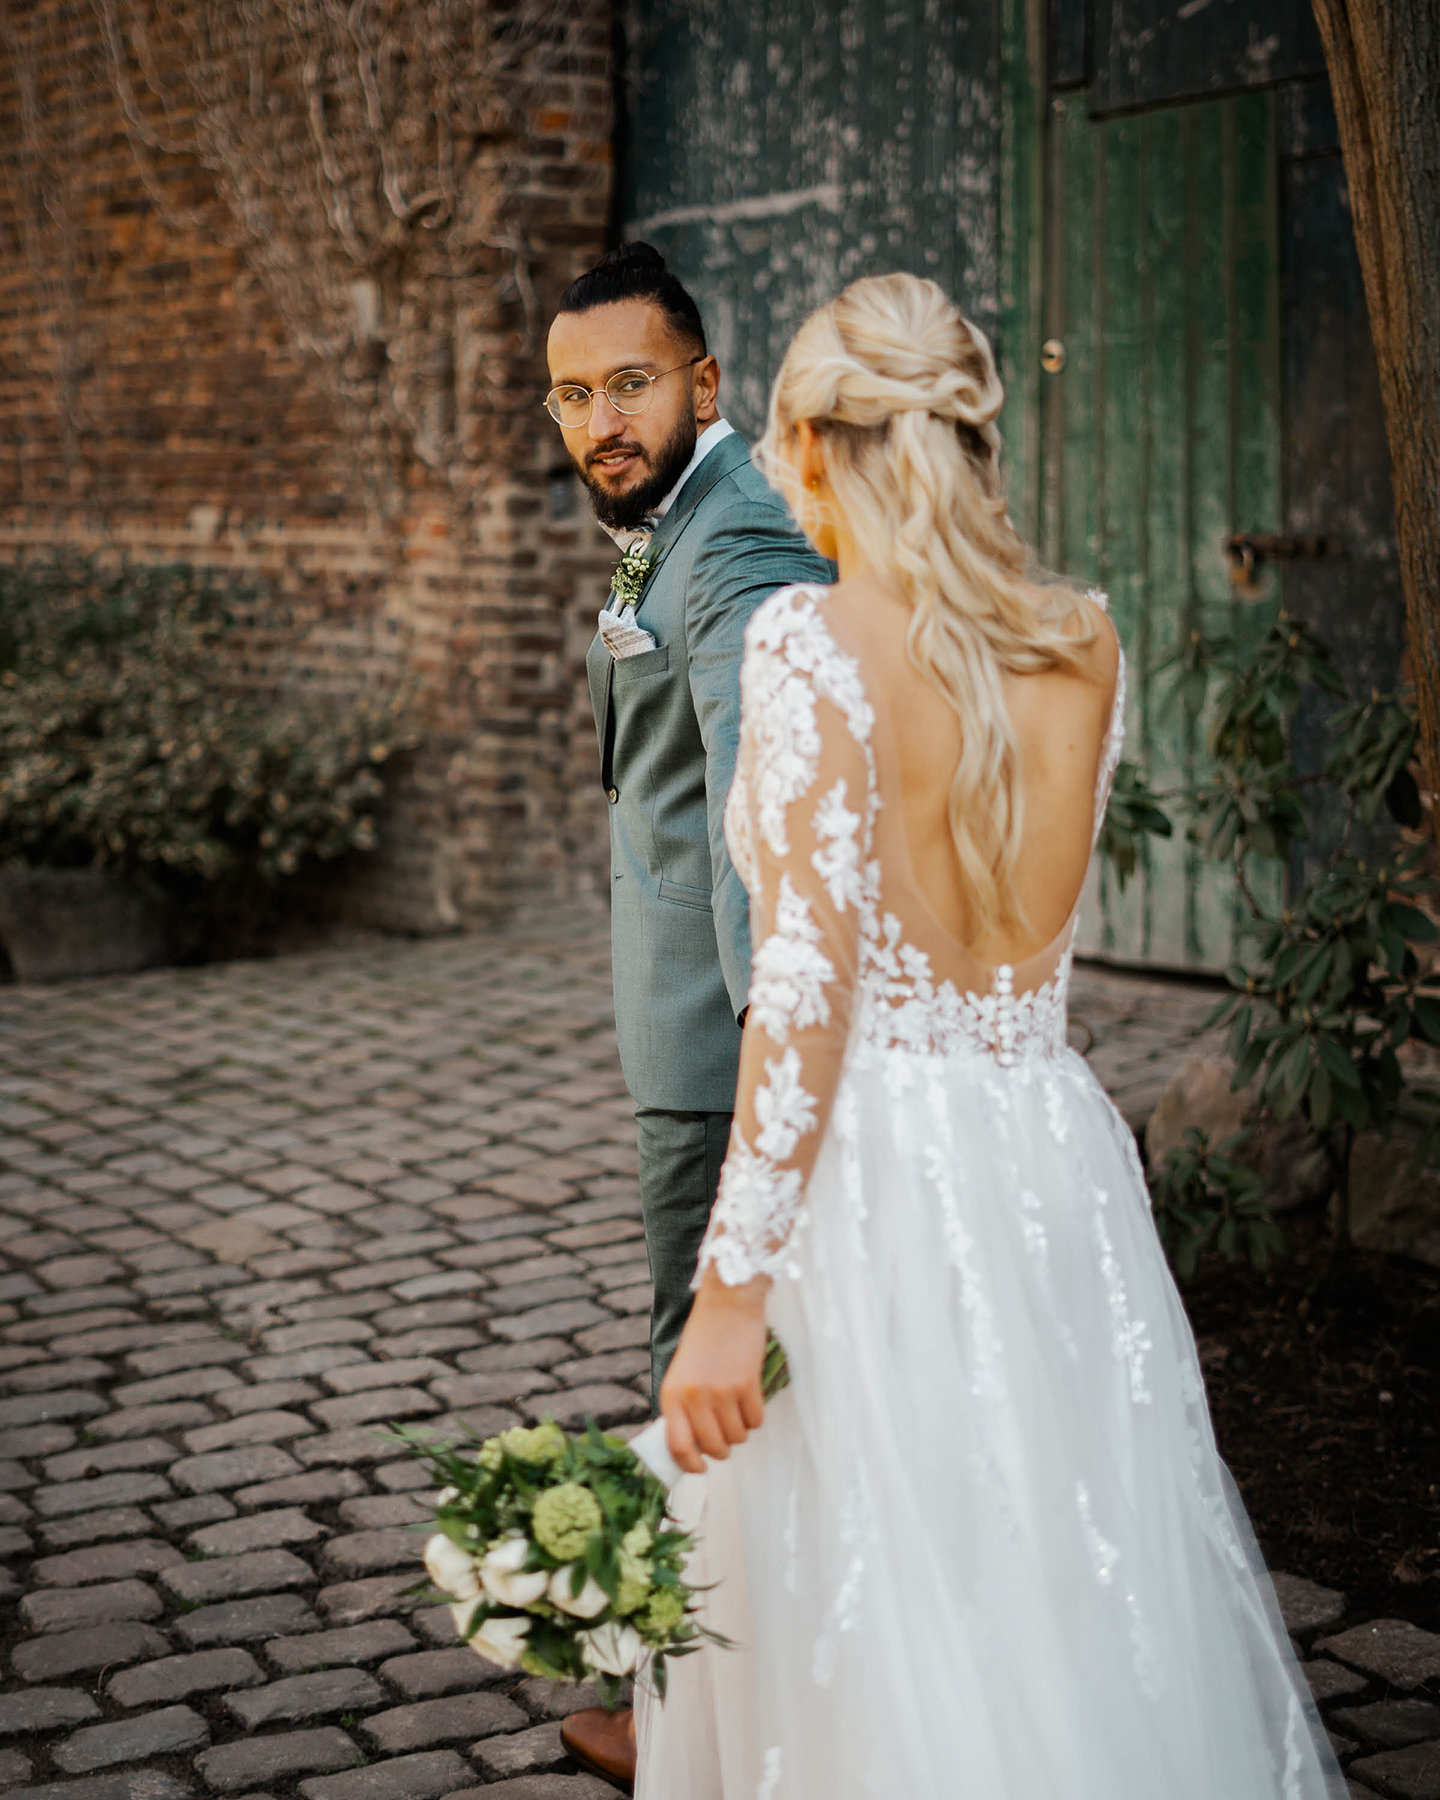  Bräutigam hält Braut an der Hand und schaut sie an. Im Hintergrund ist das Scheunentor der Hochzeitslocation zu sehen.